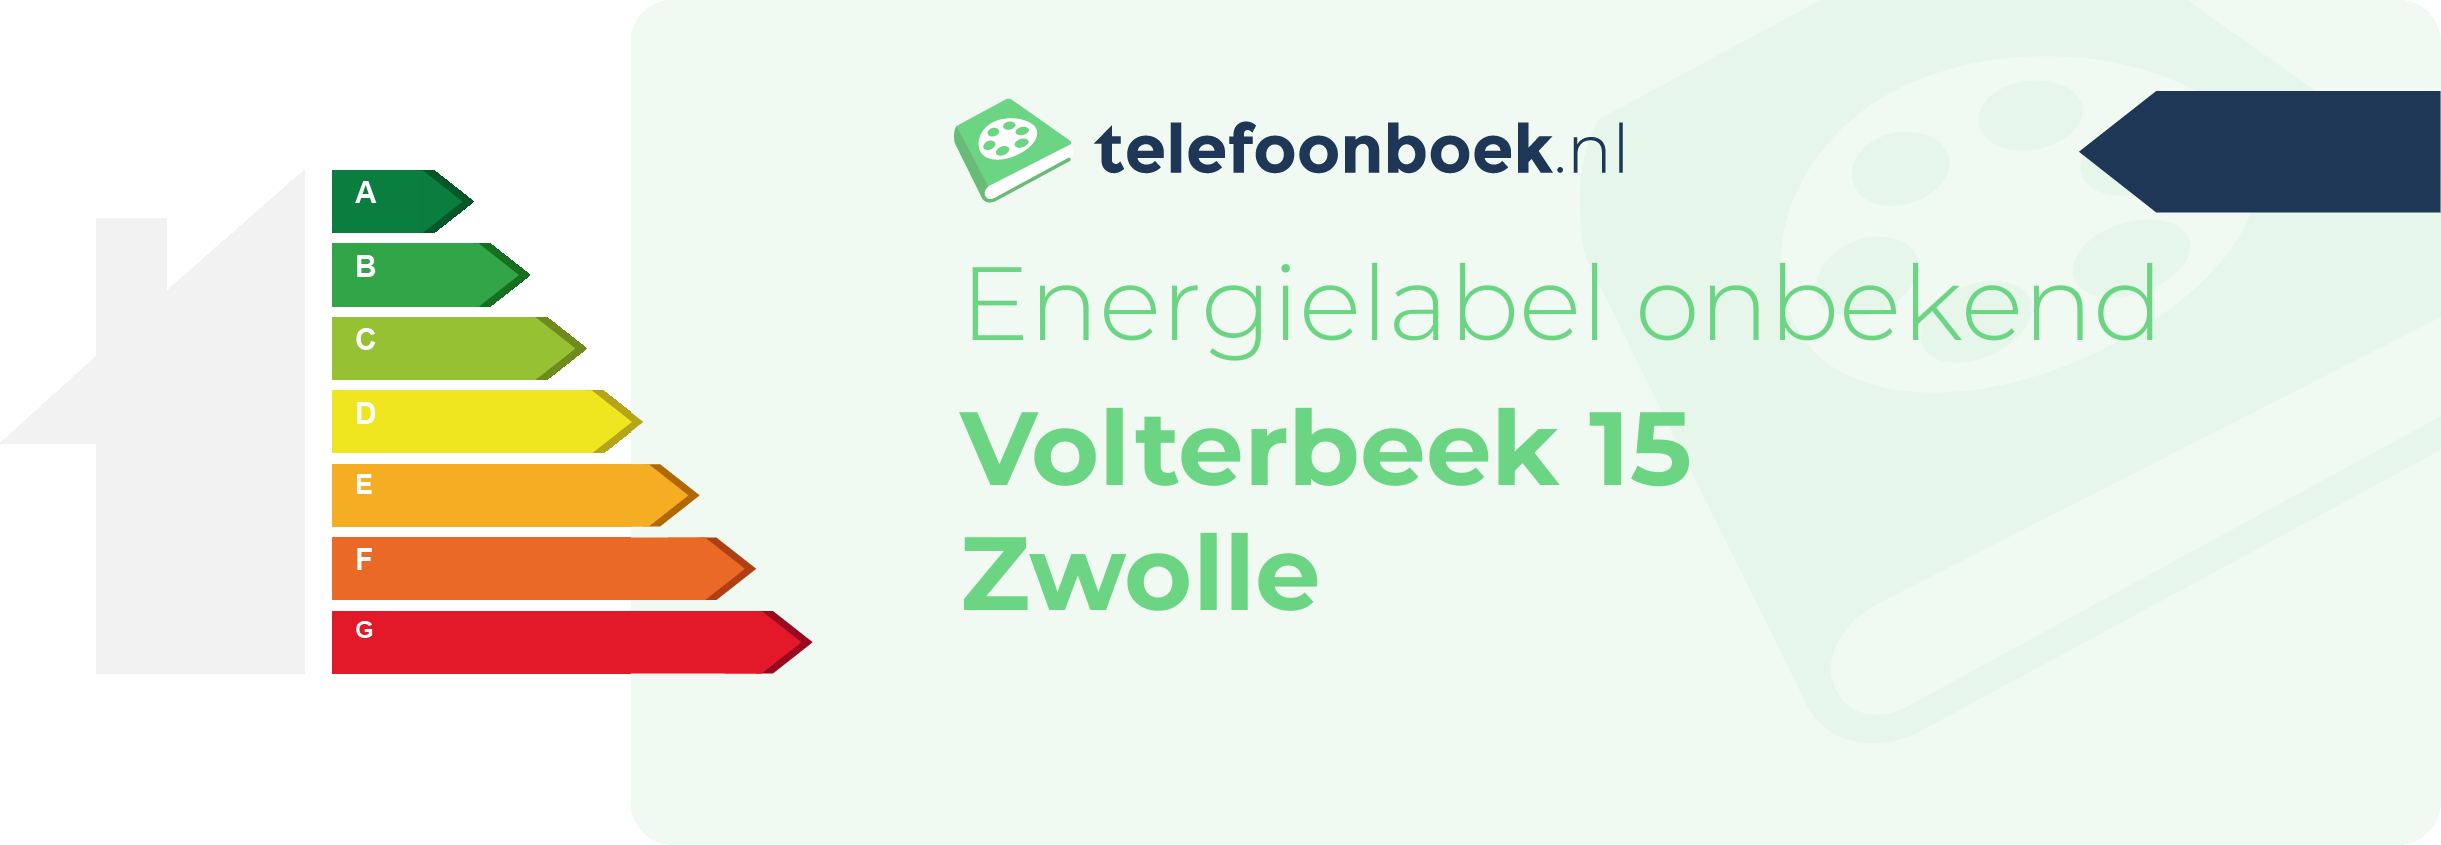 Energielabel Volterbeek 15 Zwolle